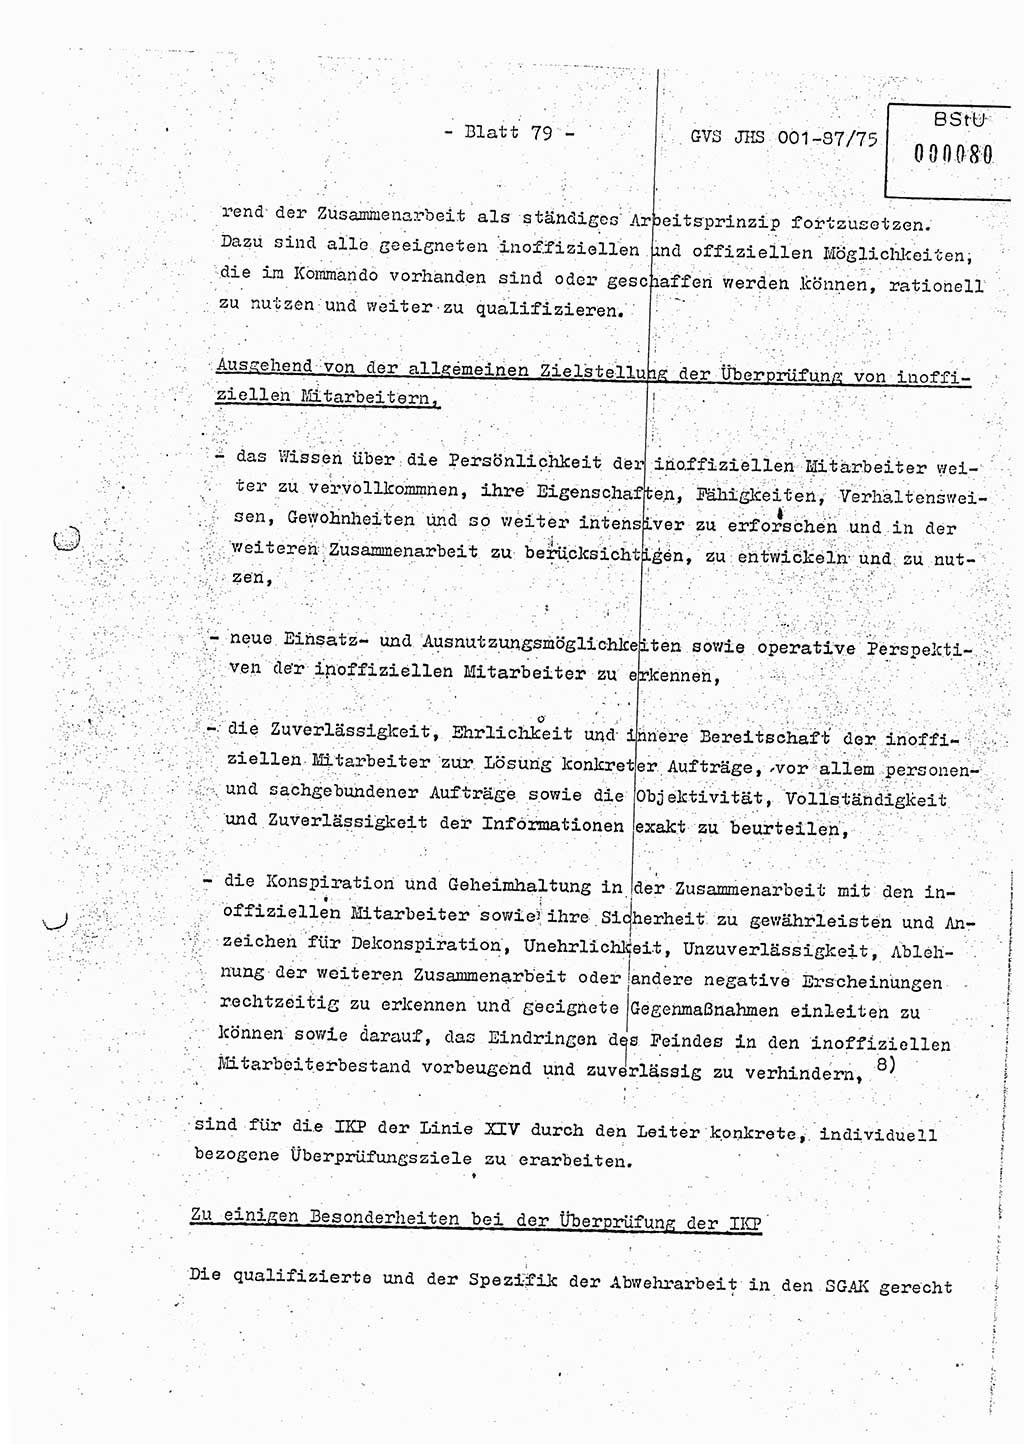 Diplomarbeit Hauptmann Volkmar Heinz (Abt. ⅩⅣ), Oberleutnant Lothar Rüdiger (BV Lpz. Abt. Ⅺ), Ministerium für Staatssicherheit (MfS) [Deutsche Demokratische Republik (DDR)], Juristische Hochschule (JHS), Geheime Verschlußsache (GVS) o001-87/75, Potsdam 1975, Seite 79 (Dipl.-Arb. MfS DDR JHS GVS o001-87/75 1975, S. 79)